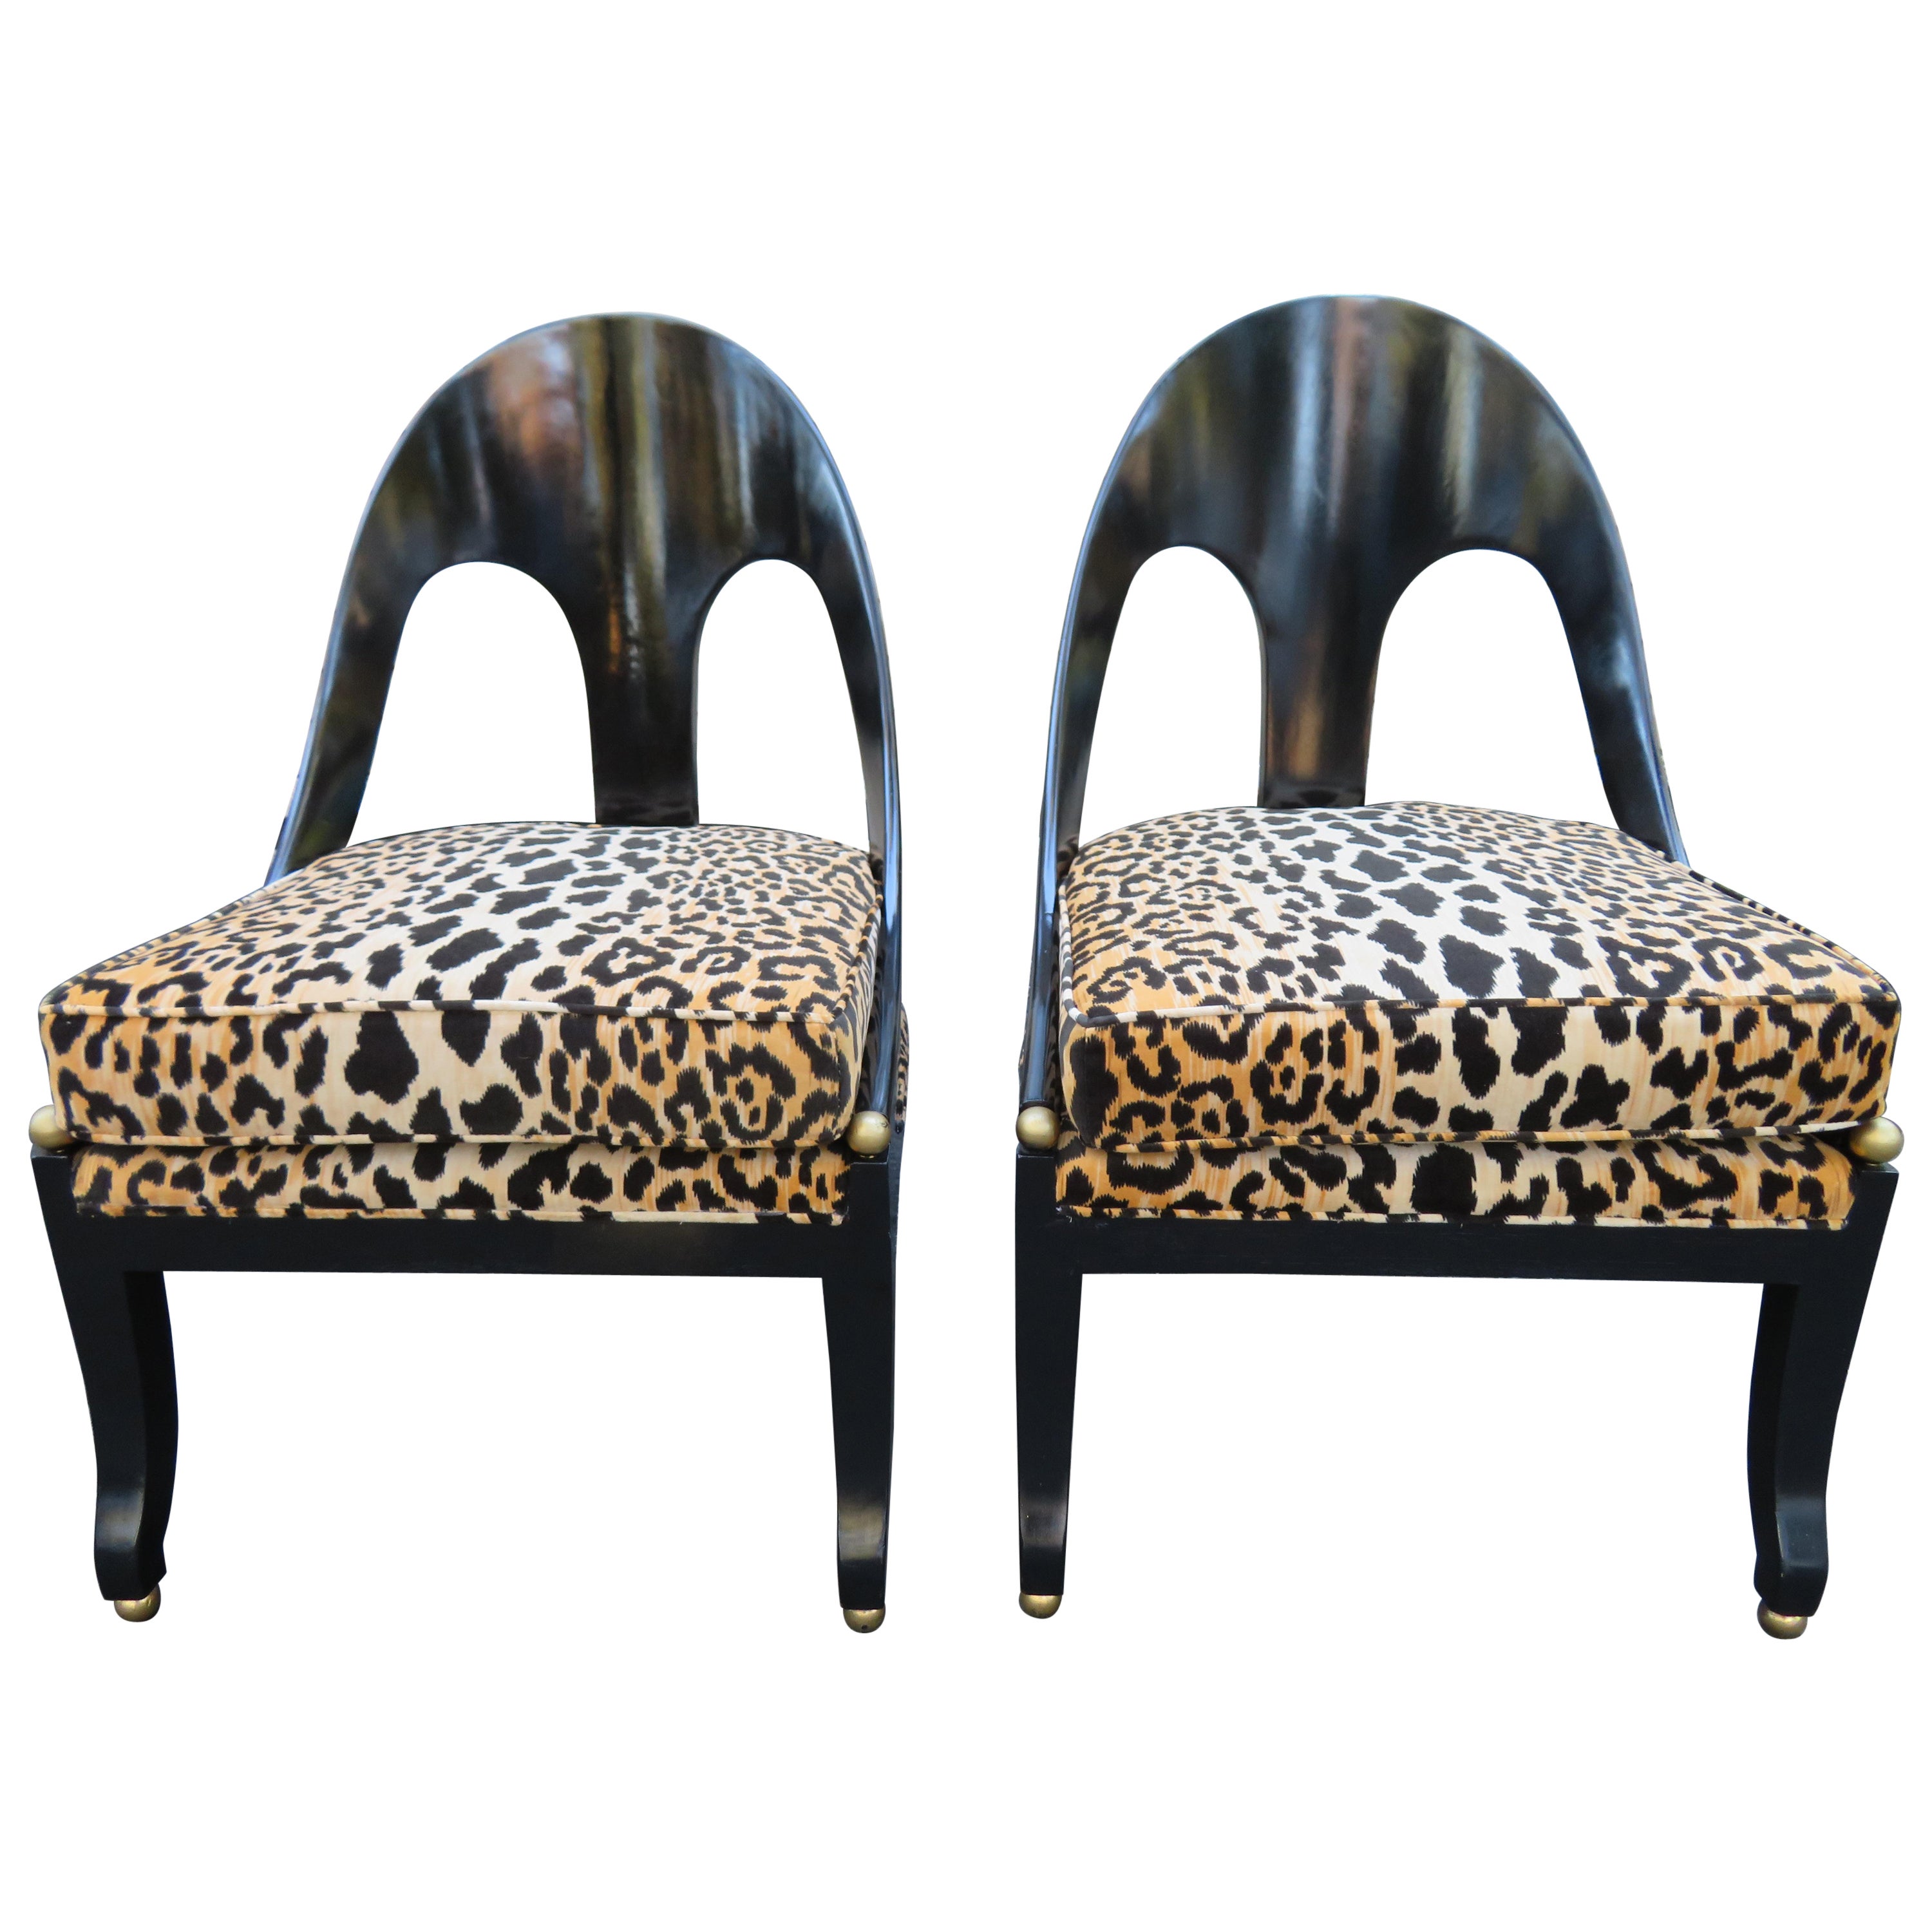 Wunderschönes Paar neoklassizistischer Stühle von Michael Taylor für Baker mit Löffelrückenlehne